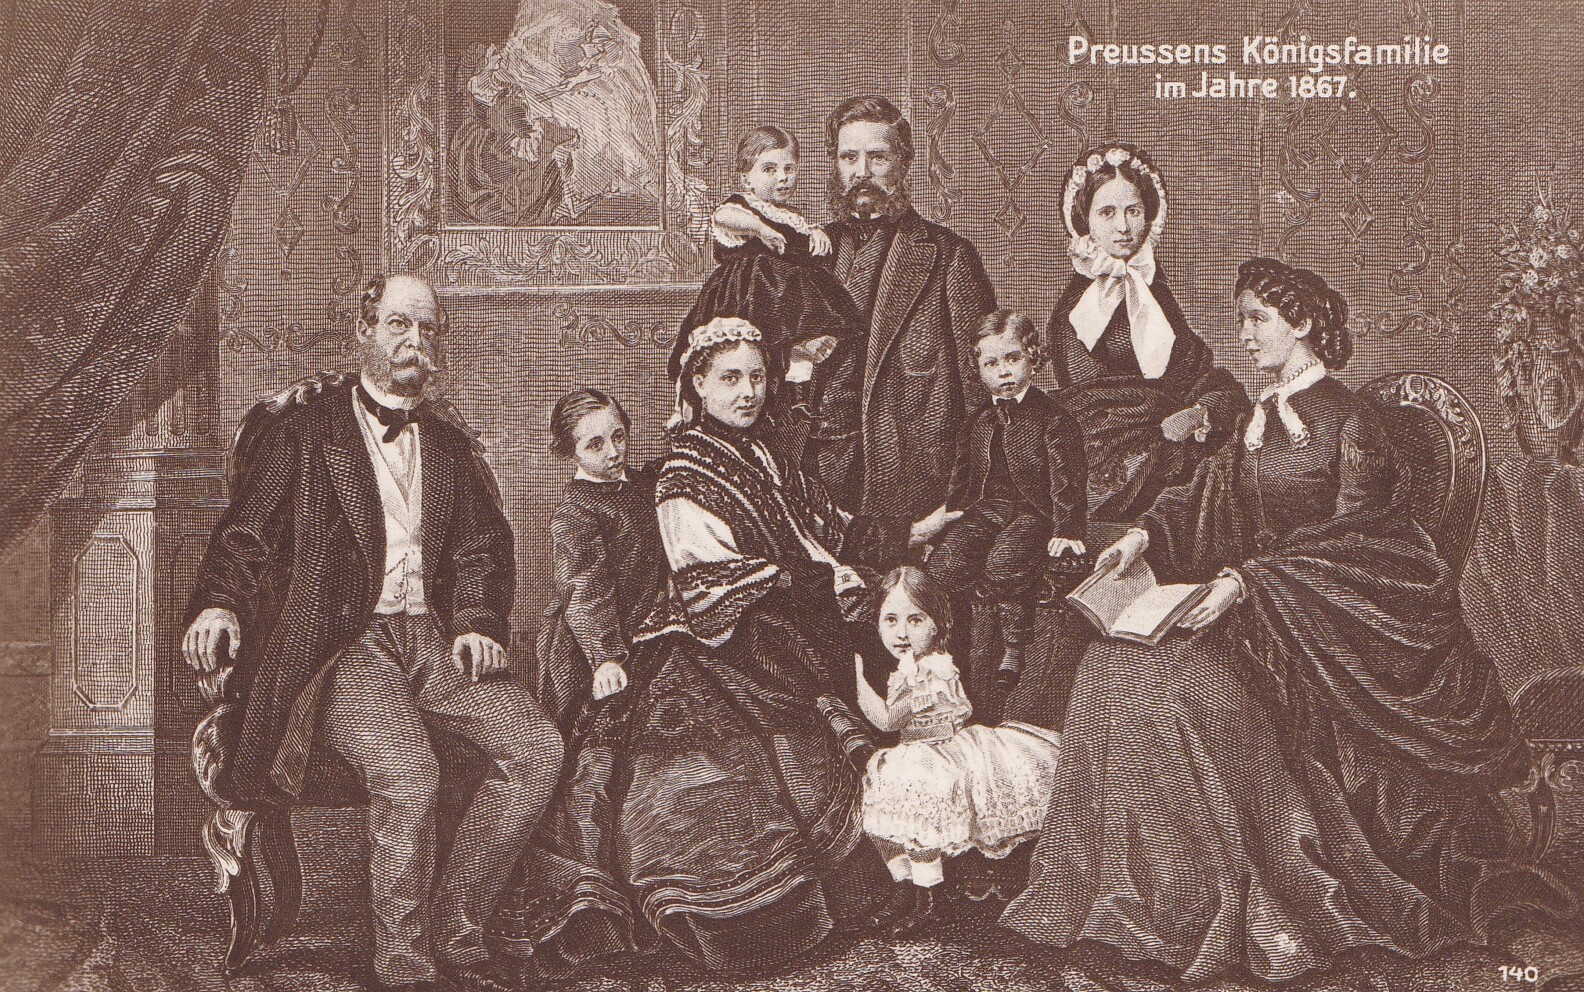 Bildpostkarte mit grafischem Gruppenbildnis der preußischen Königsfamilie im Jahr 1867, um 1910 (Schloß Wernigerode GmbH RR-F)